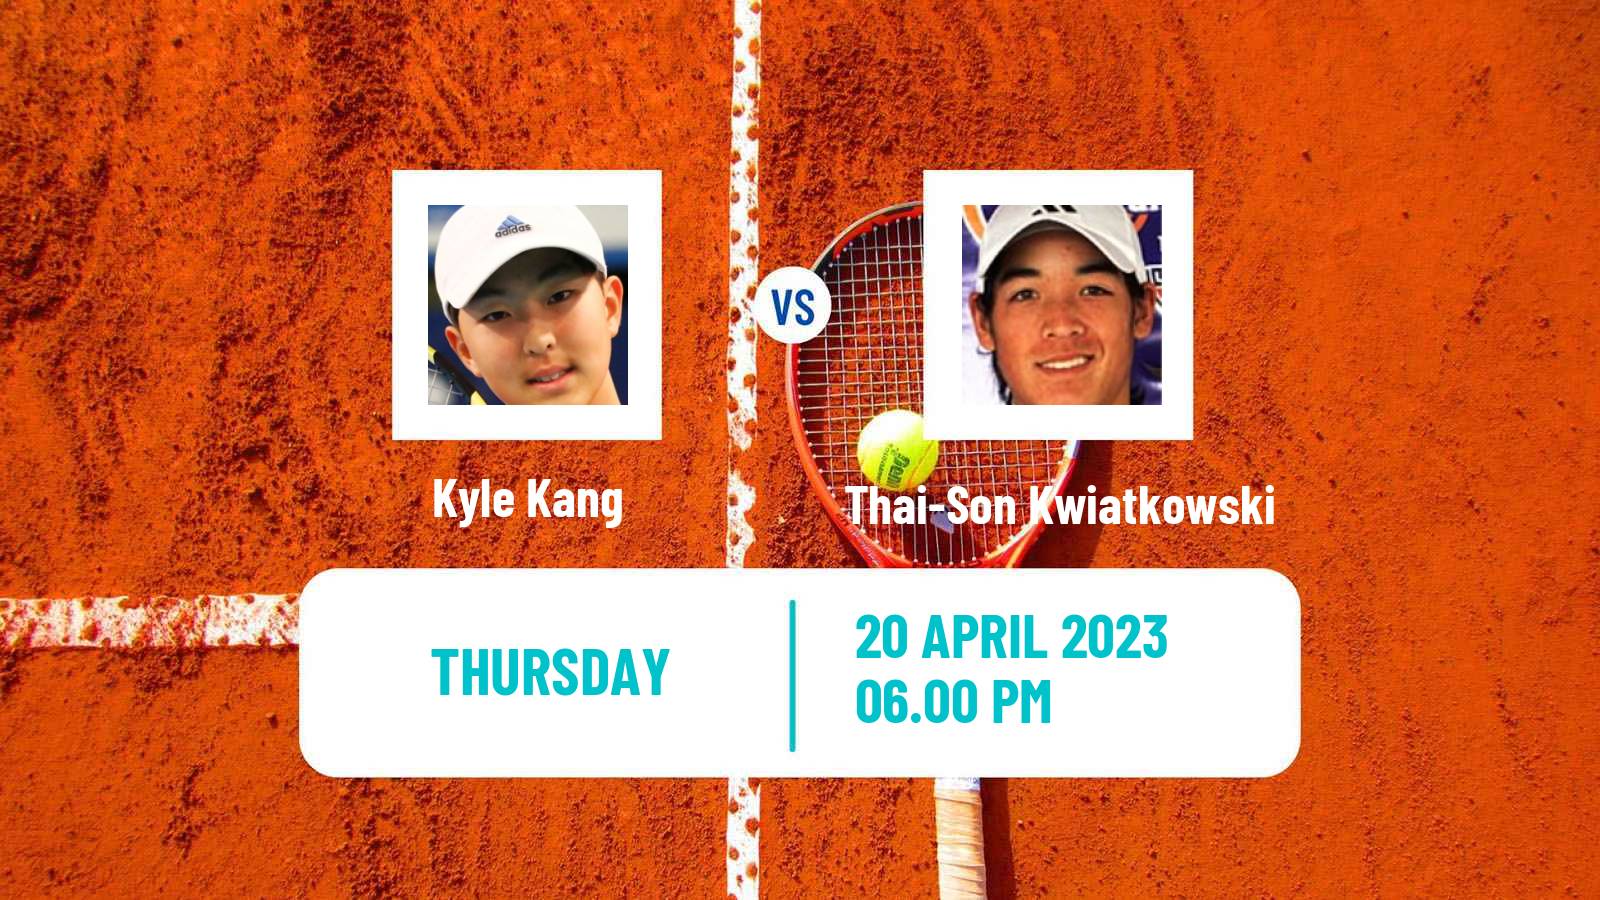 Tennis ATP Challenger Kyle Kang - Thai-Son Kwiatkowski